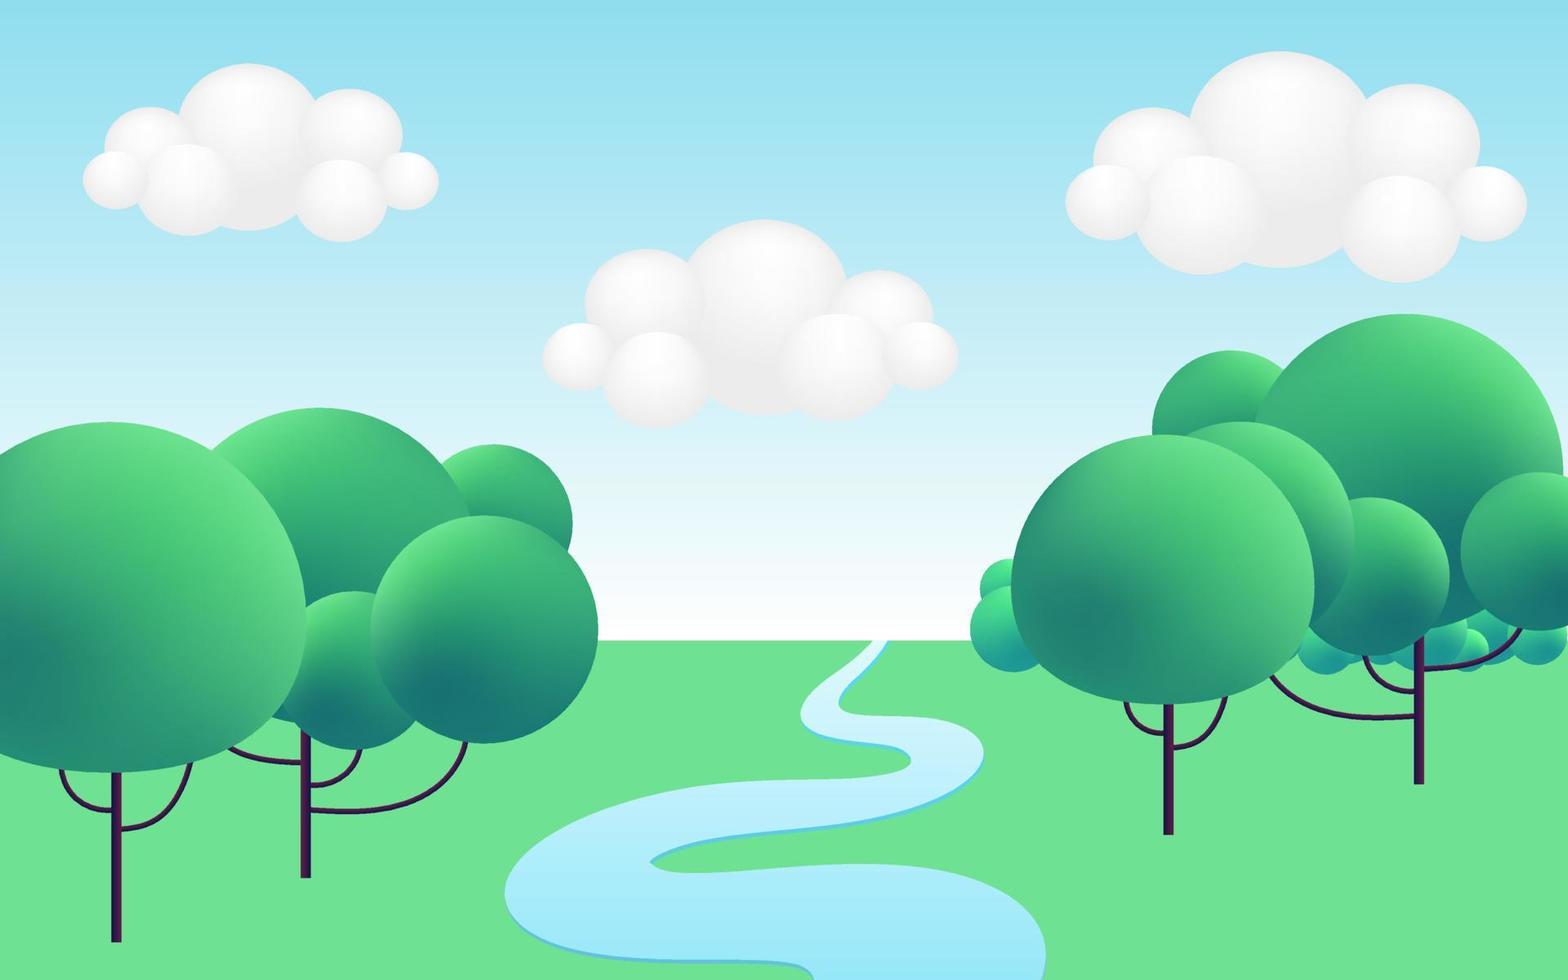 3d realistischer grüner Cartoon-Panorama-Sommerlandschaftshintergrund mit grünen Hügeln, Fluss, Bäumen, Wolken, am blauen Himmel. Natur Umwelt Horizont Zusammensetzung. Vektor-Illustration. vektor